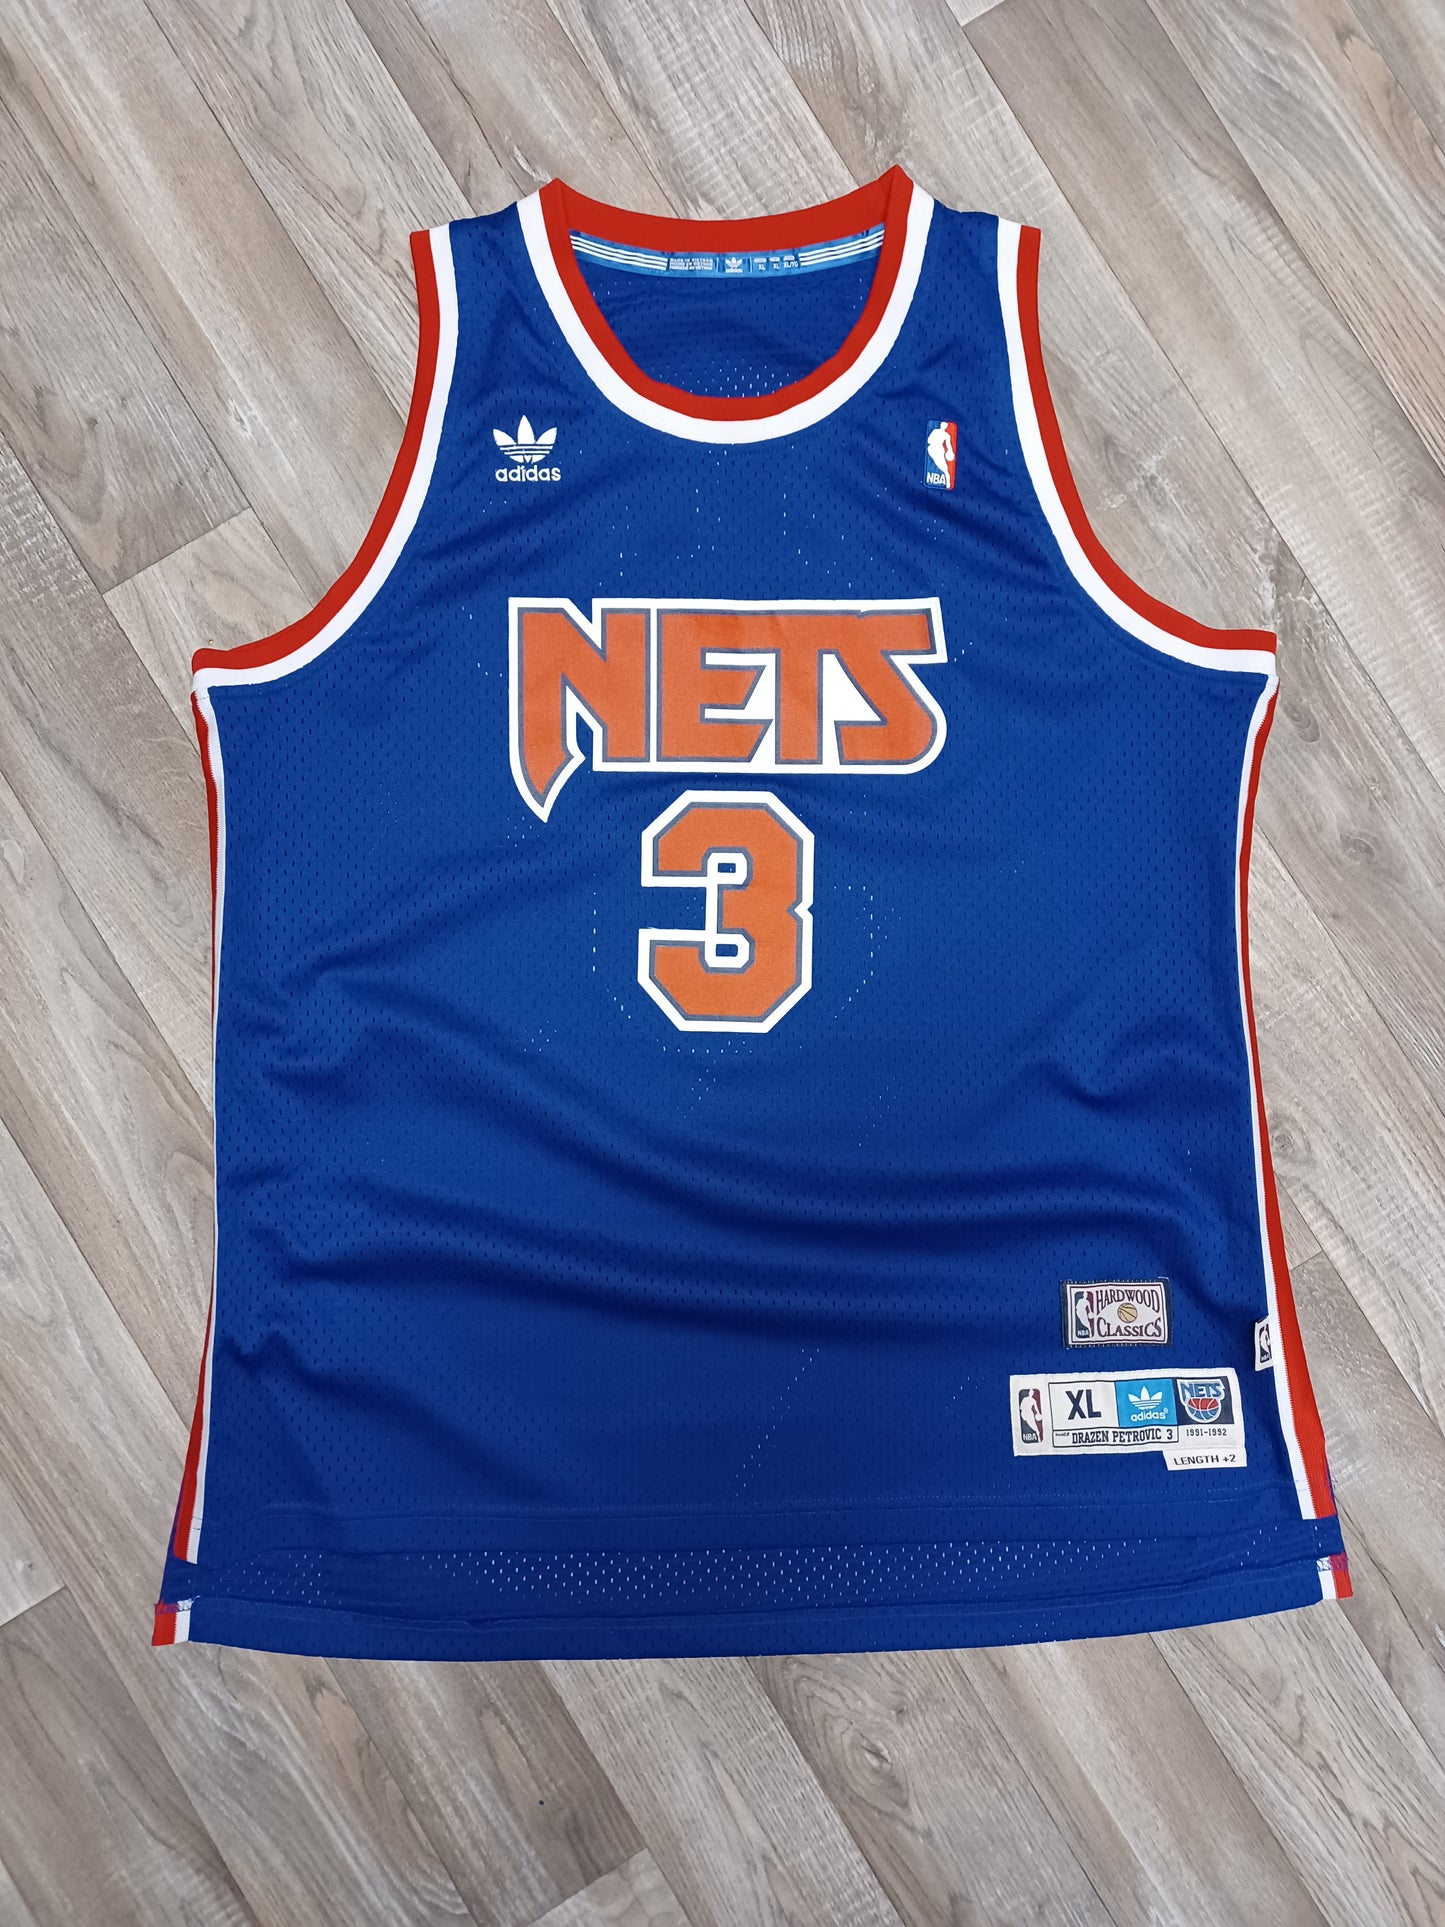 Drazen Petrovic New Jersey Nets Jersey Size XL